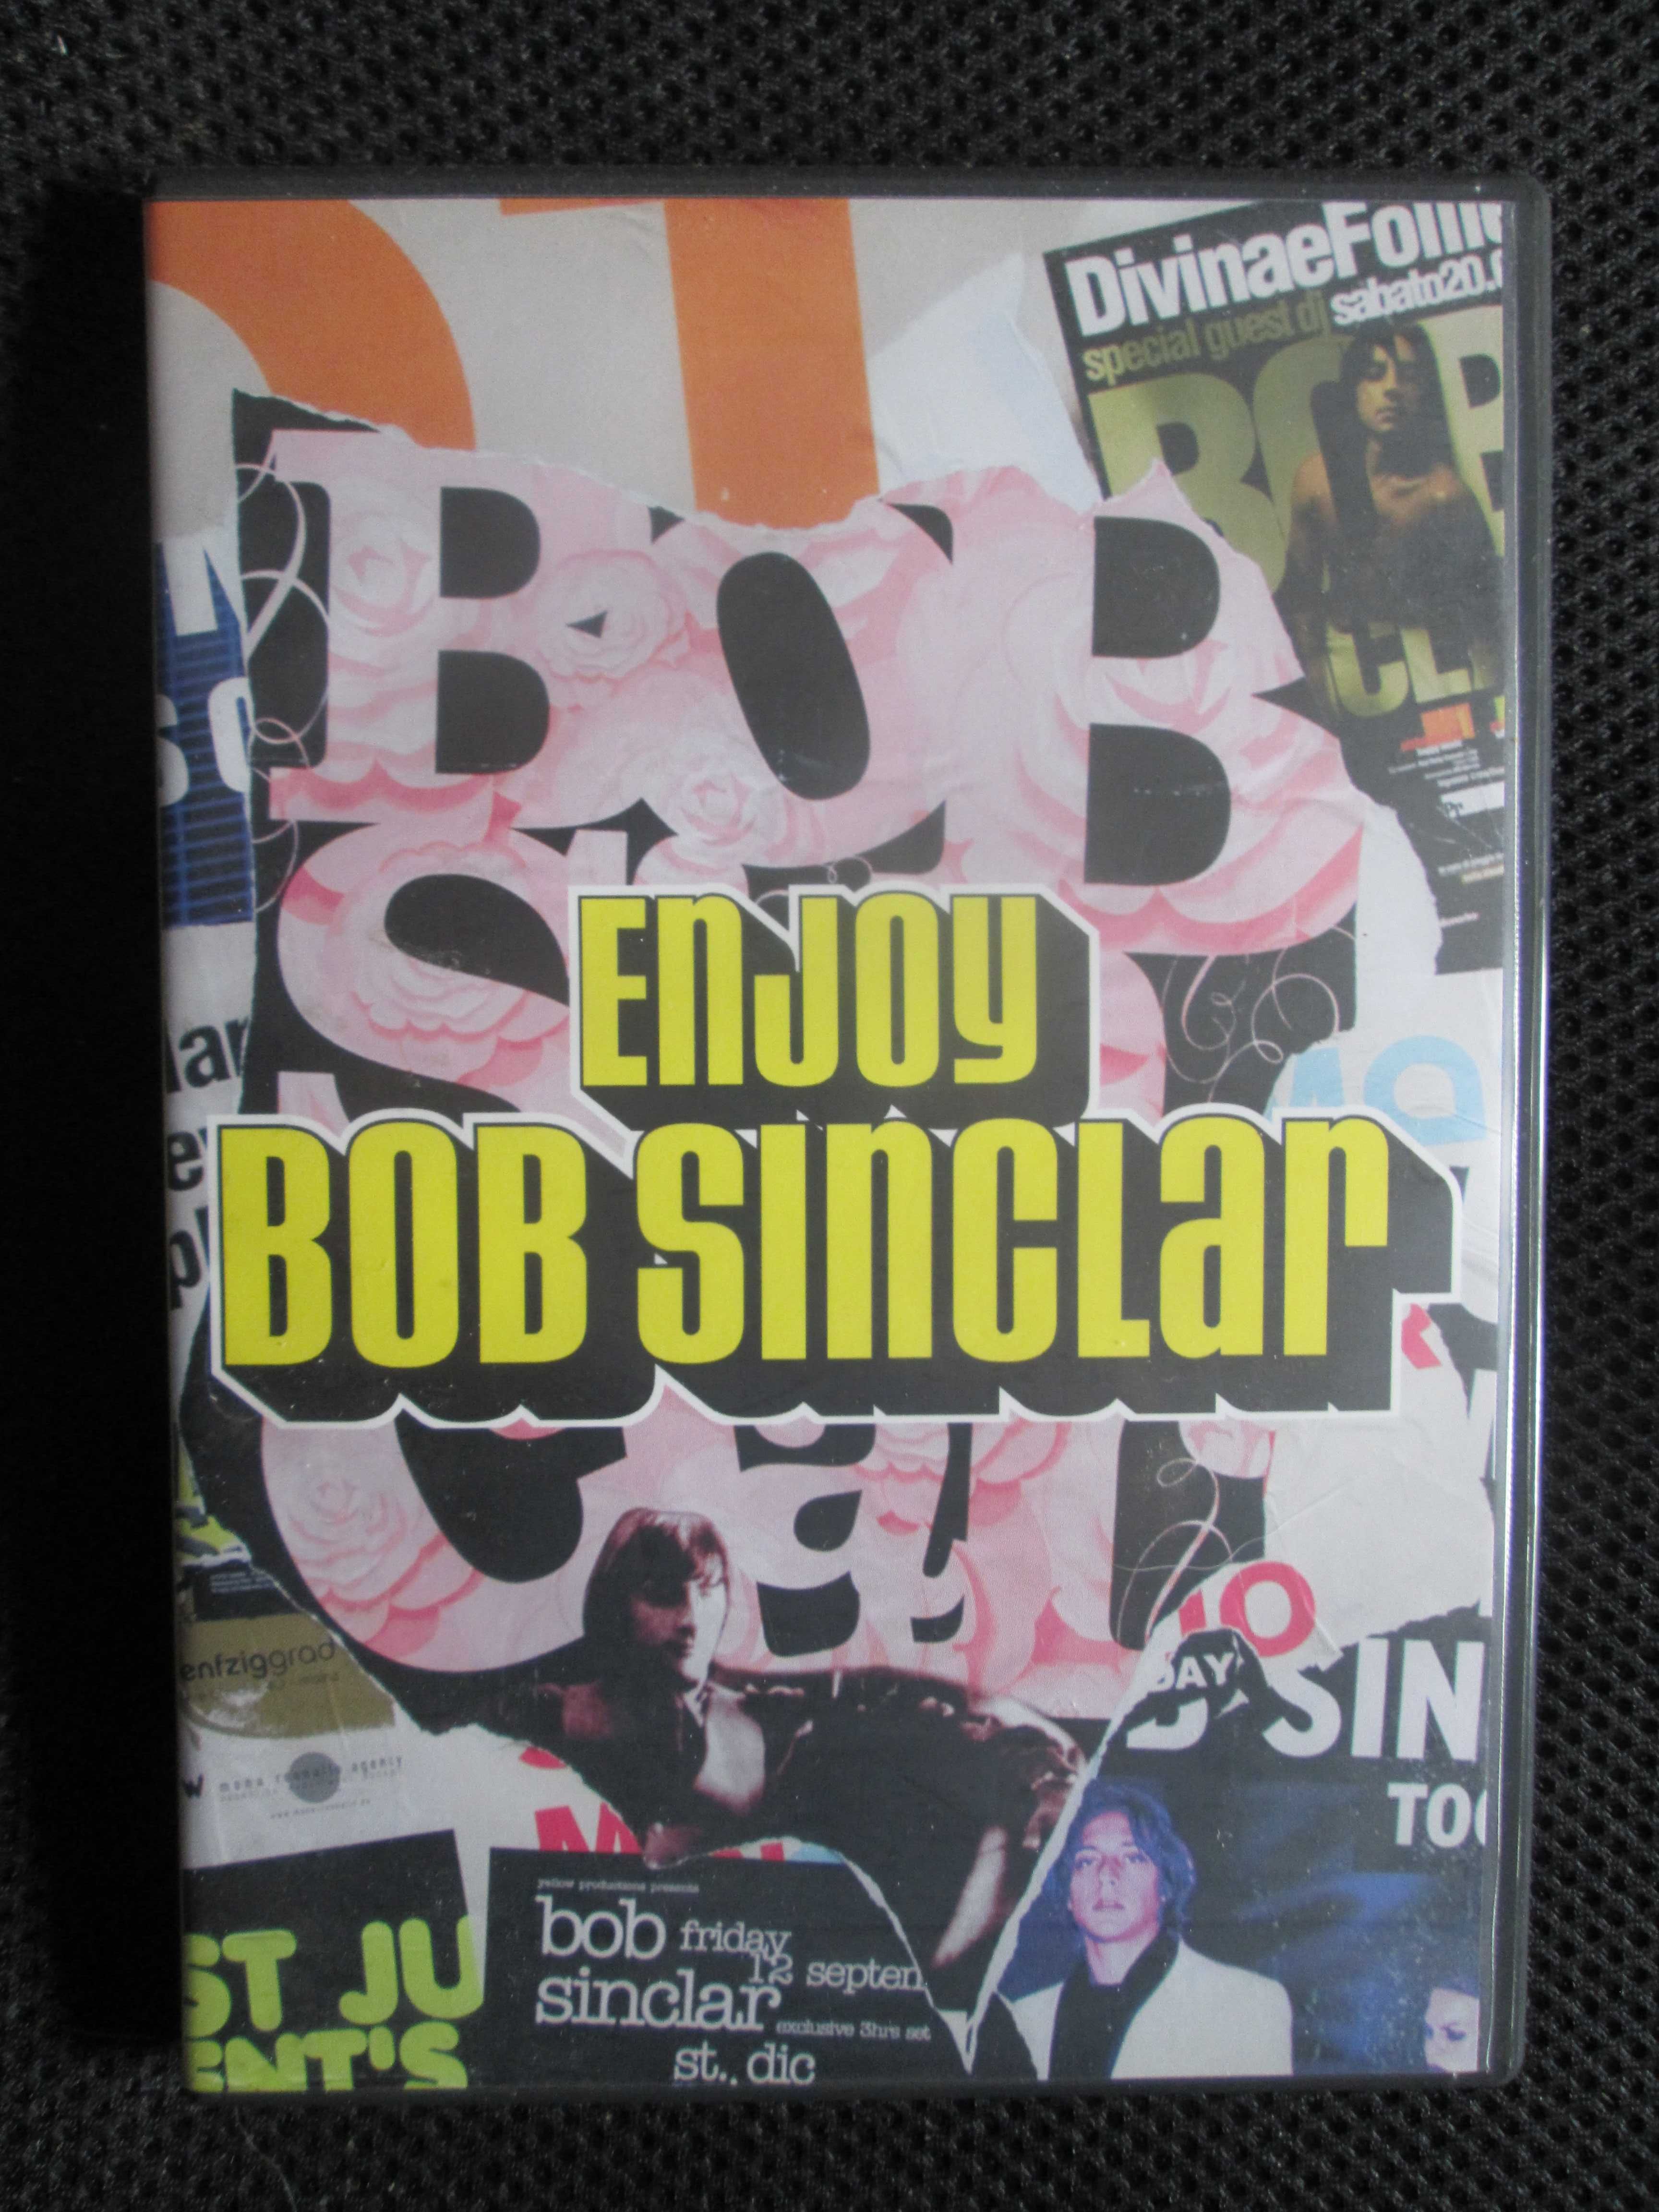 DVD Bobob Sinclar Enjoy, duplo, como novo